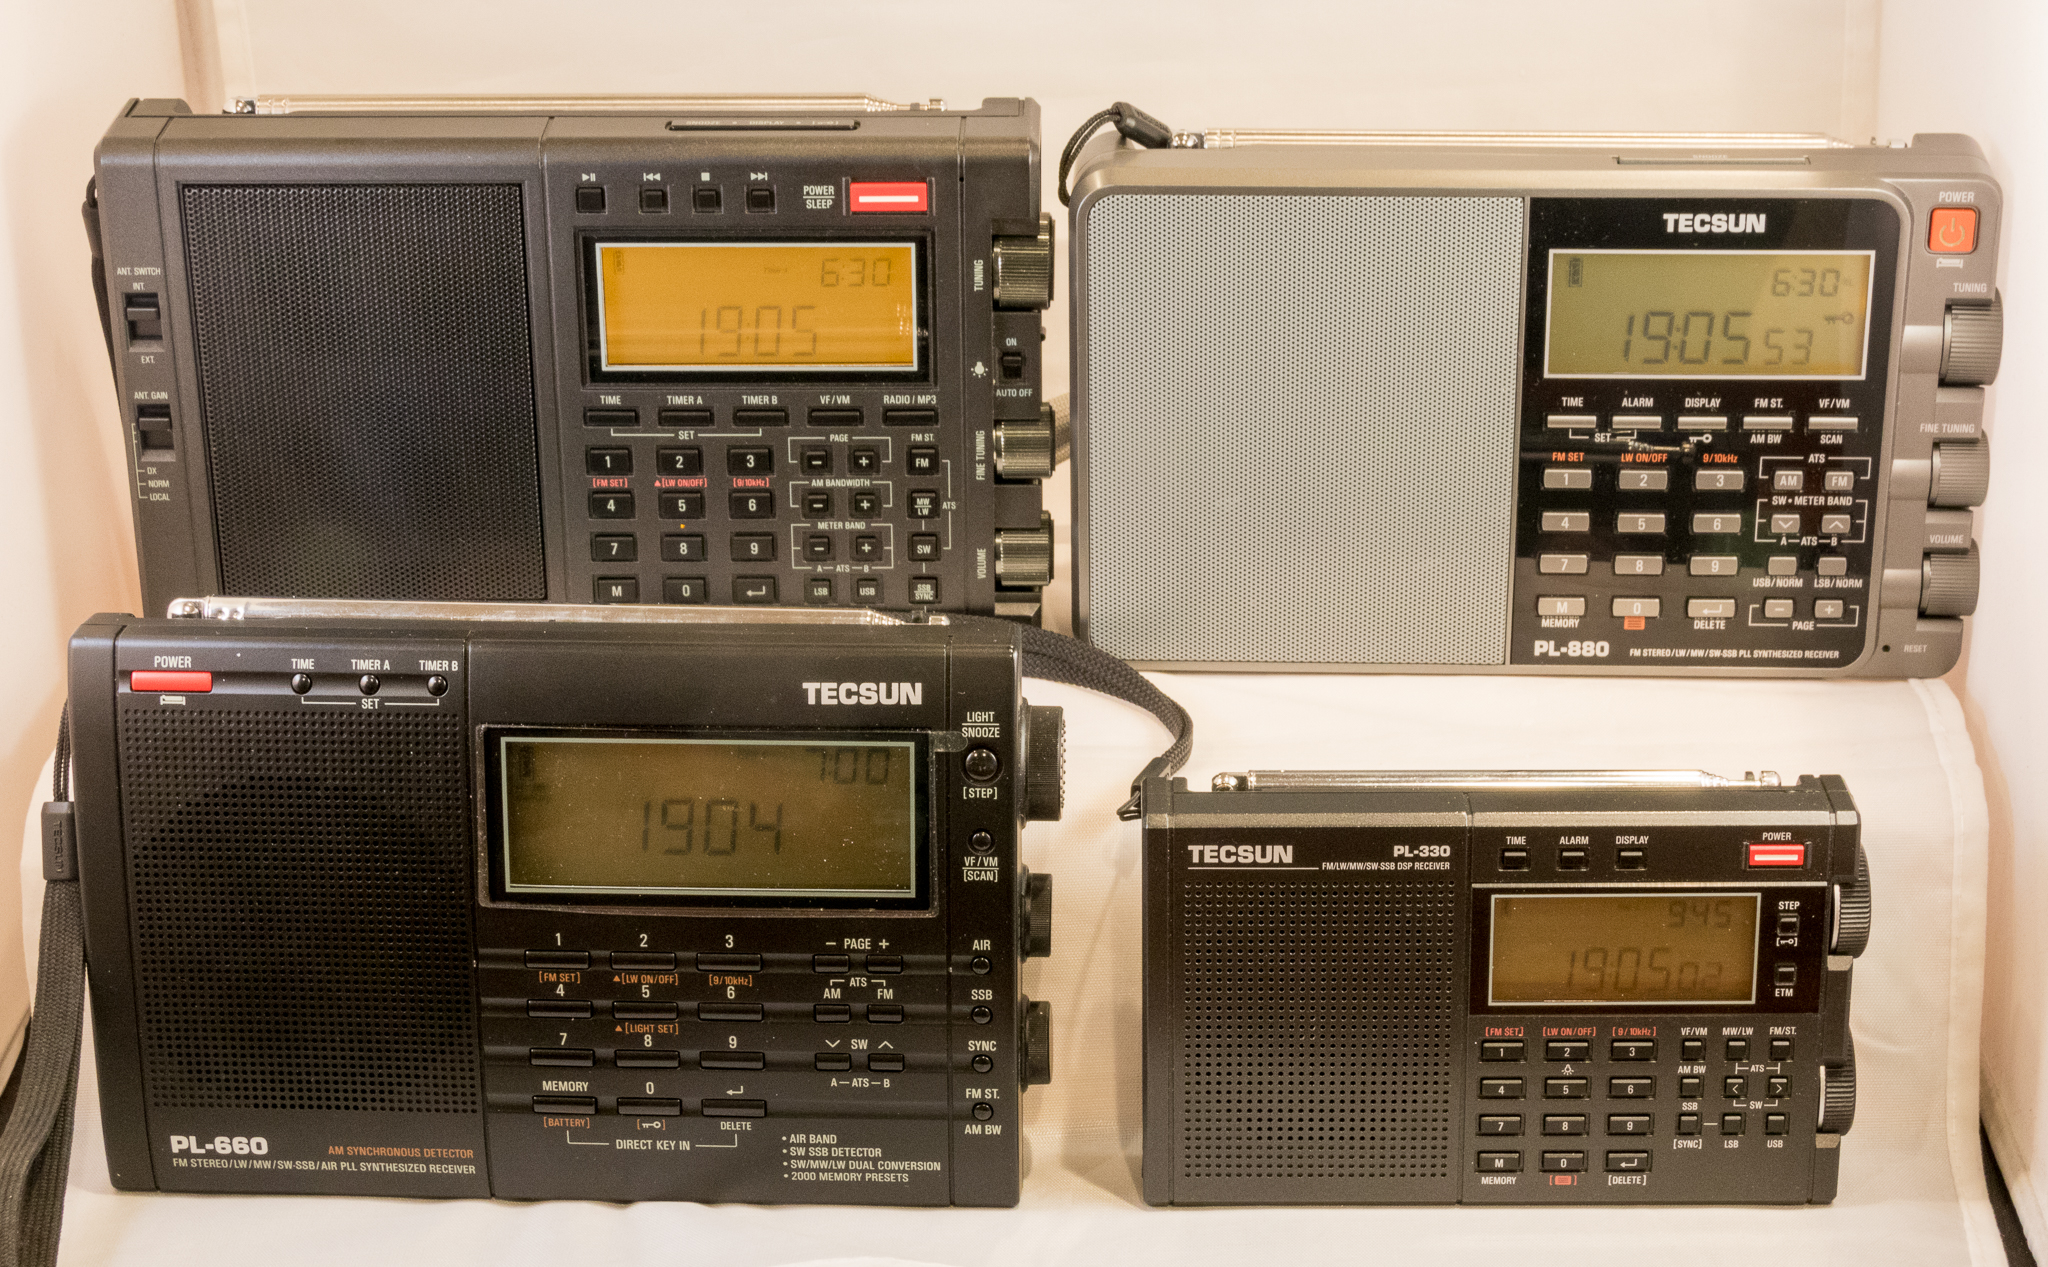 Tecsun PL-ease: Comparing the PL-330, PL-660, PL-880 and PL-990